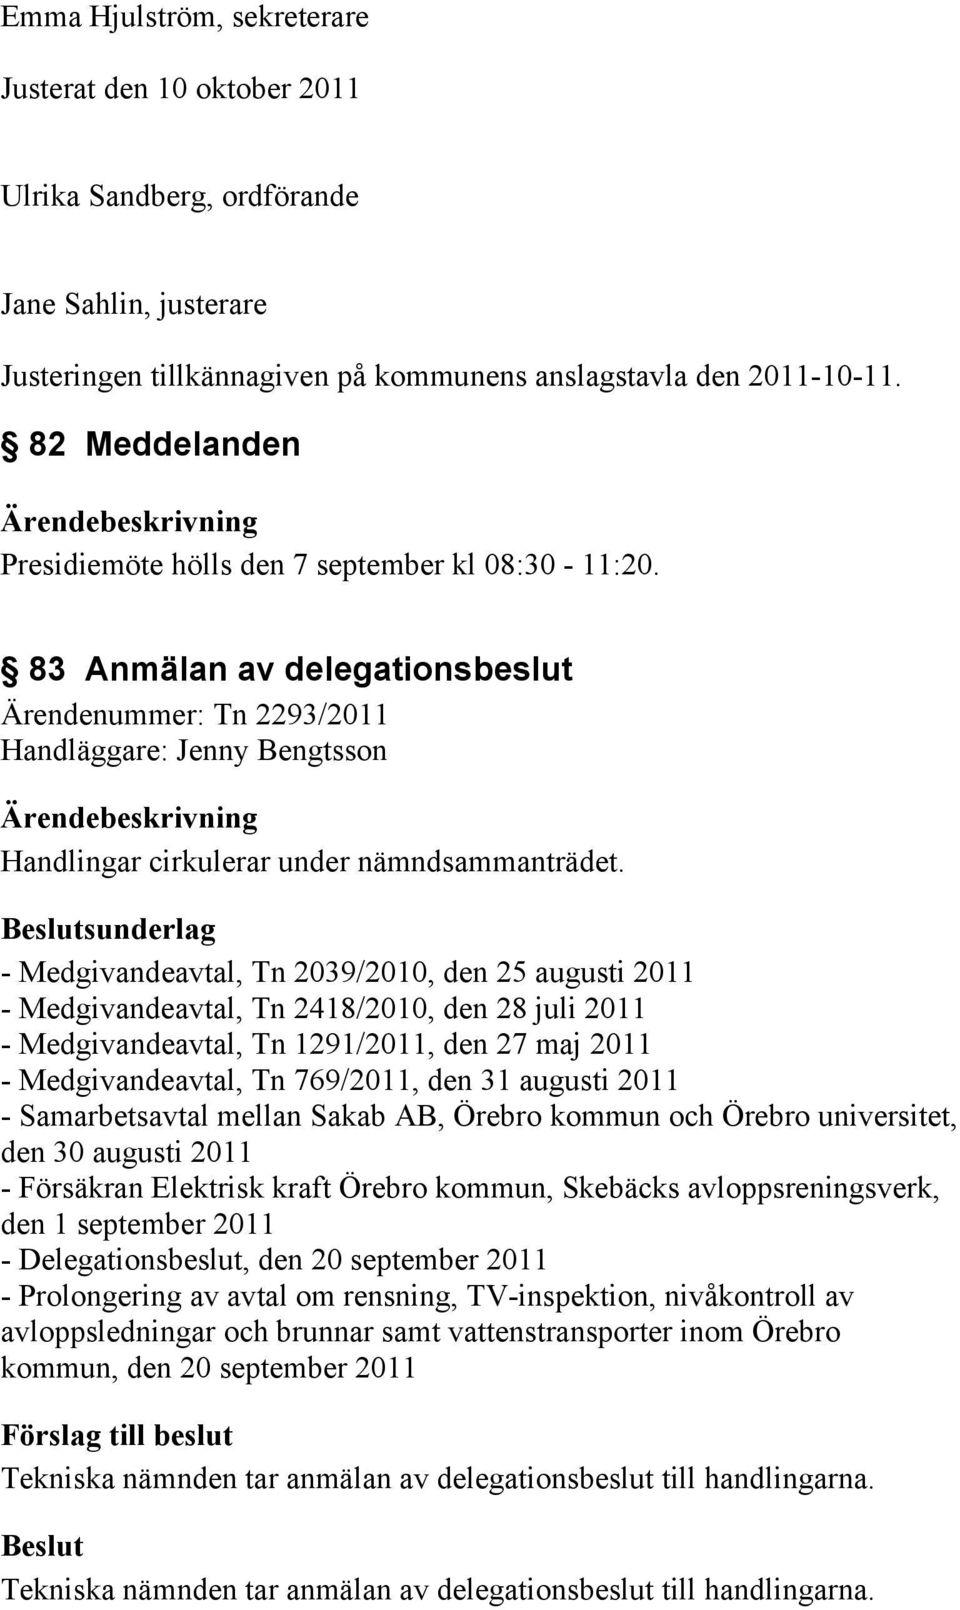 sunderlag - Medgivandeavtal, Tn 2039/2010, den 25 augusti 2011 - Medgivandeavtal, Tn 2418/2010, den 28 juli 2011 - Medgivandeavtal, Tn 1291/2011, den 27 maj 2011 - Medgivandeavtal, Tn 769/2011, den